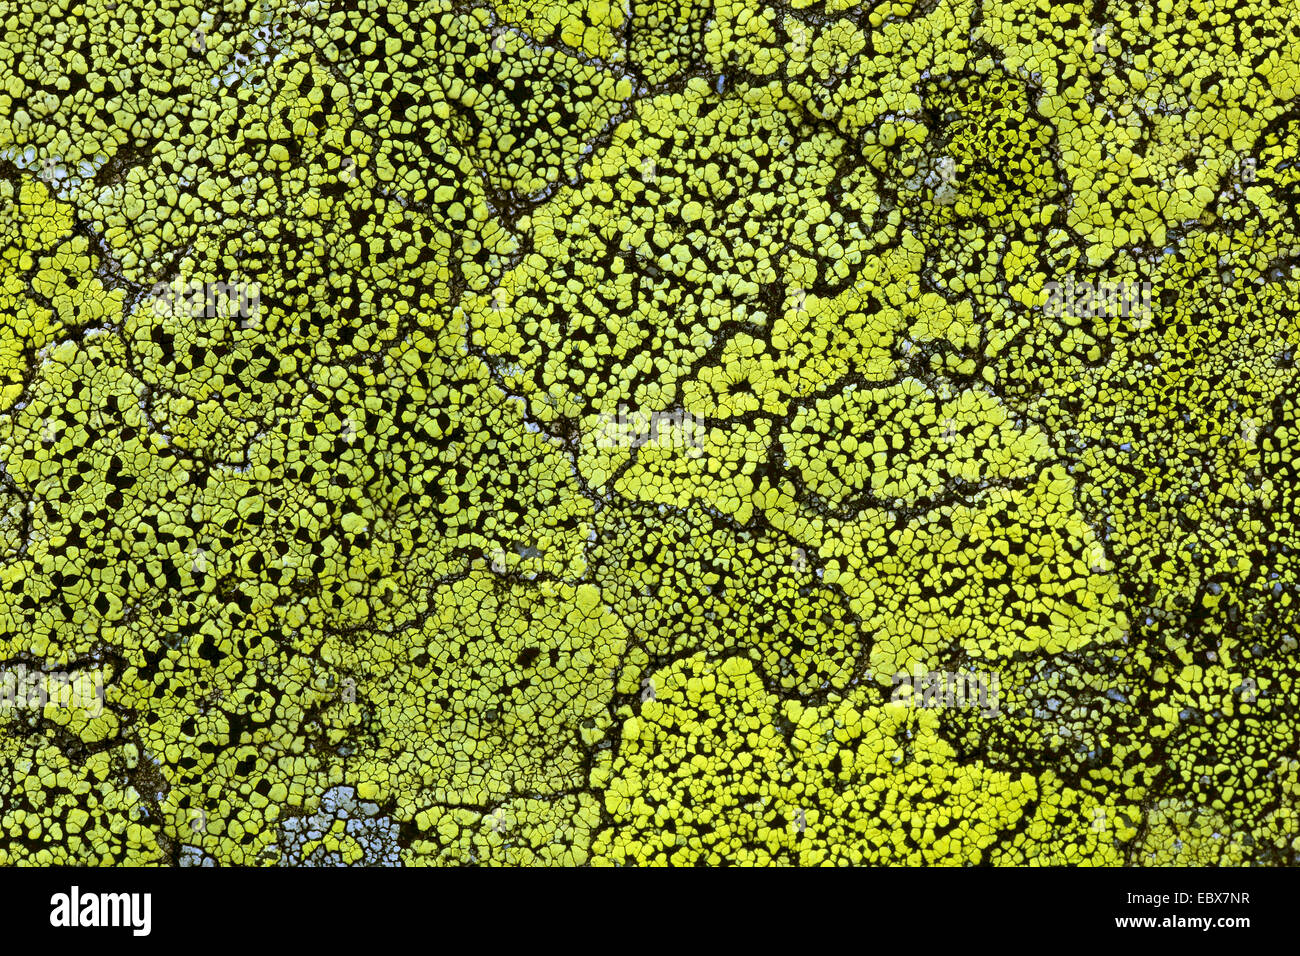 lichenes on a rock, Switzerland Stock Photo